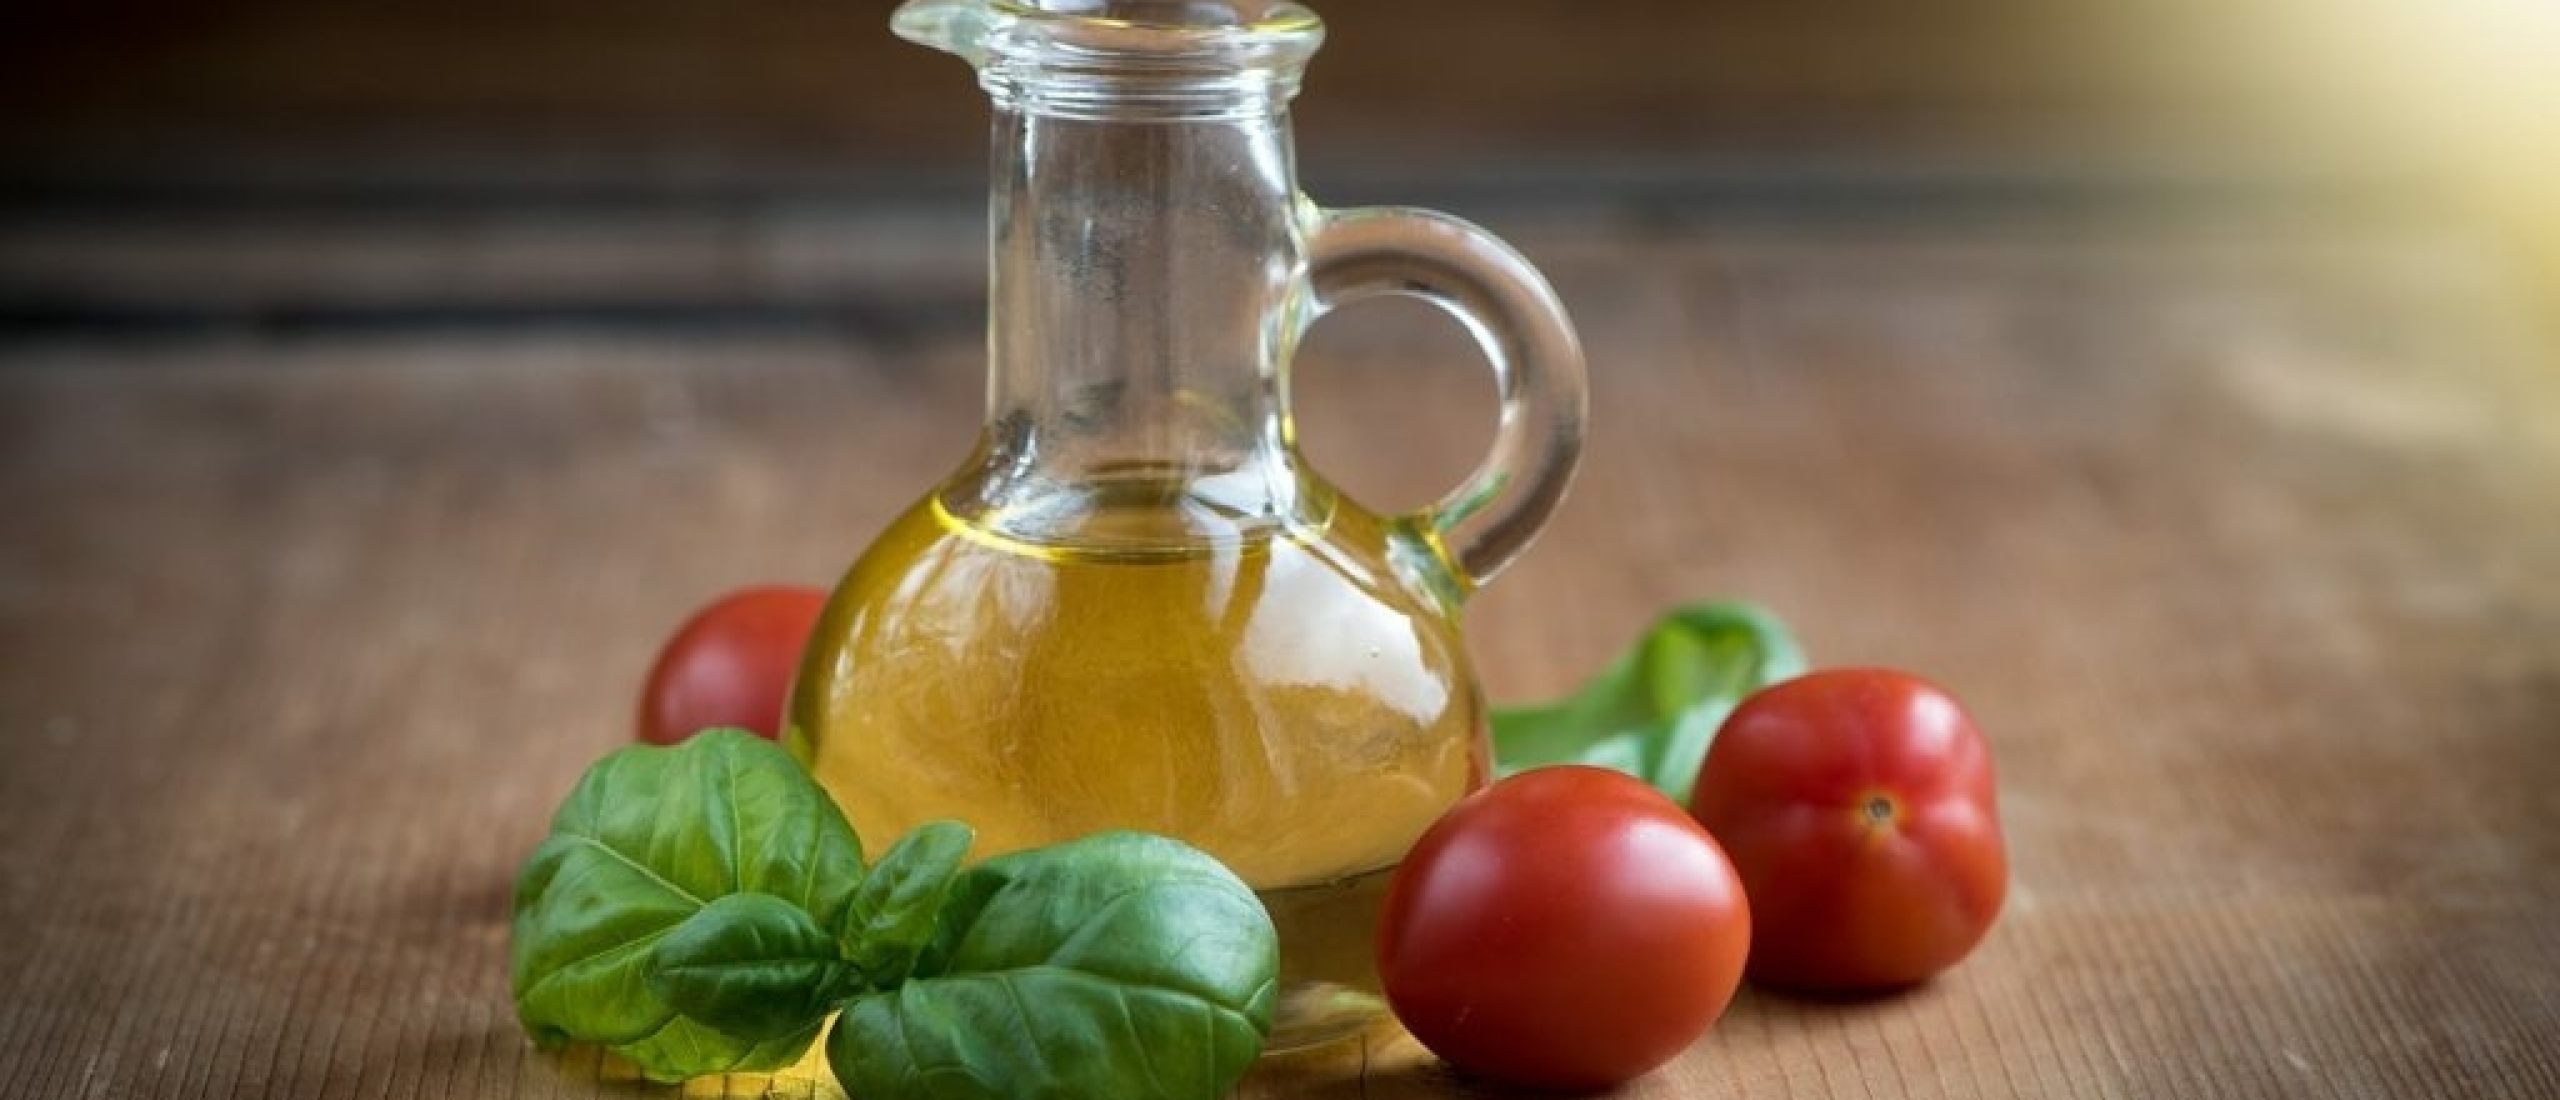 Hoe bewaar je olijfolie op de juiste manier?